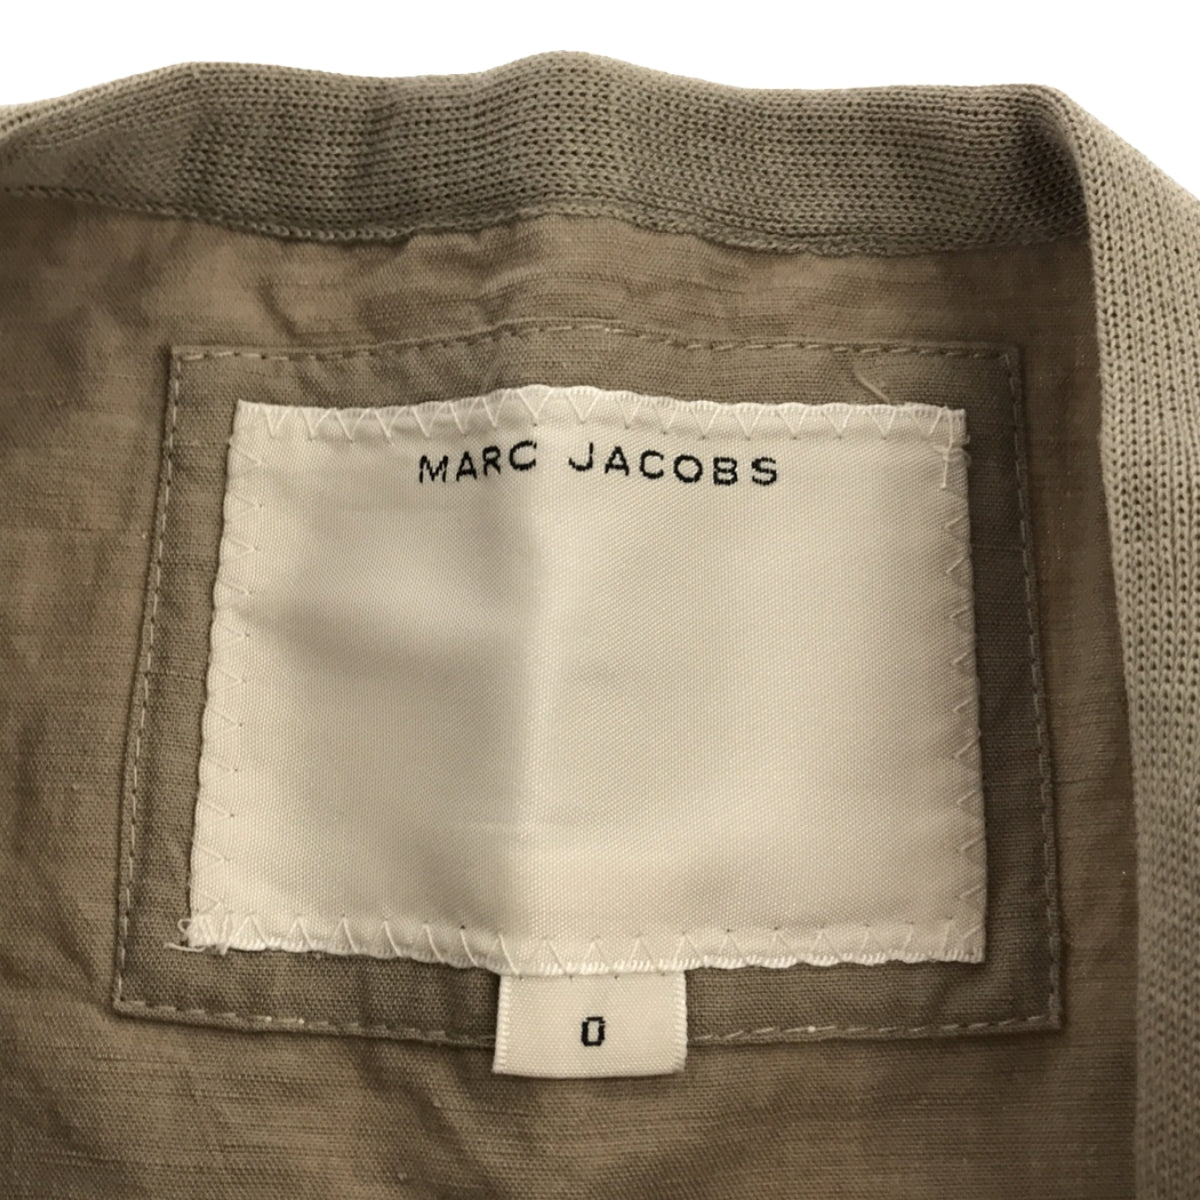 MARC JACOBS / マークジェイコブス | リネン コットン カモフラージュ柄 ヘンリーネック Tシャツ | 0 | レディース